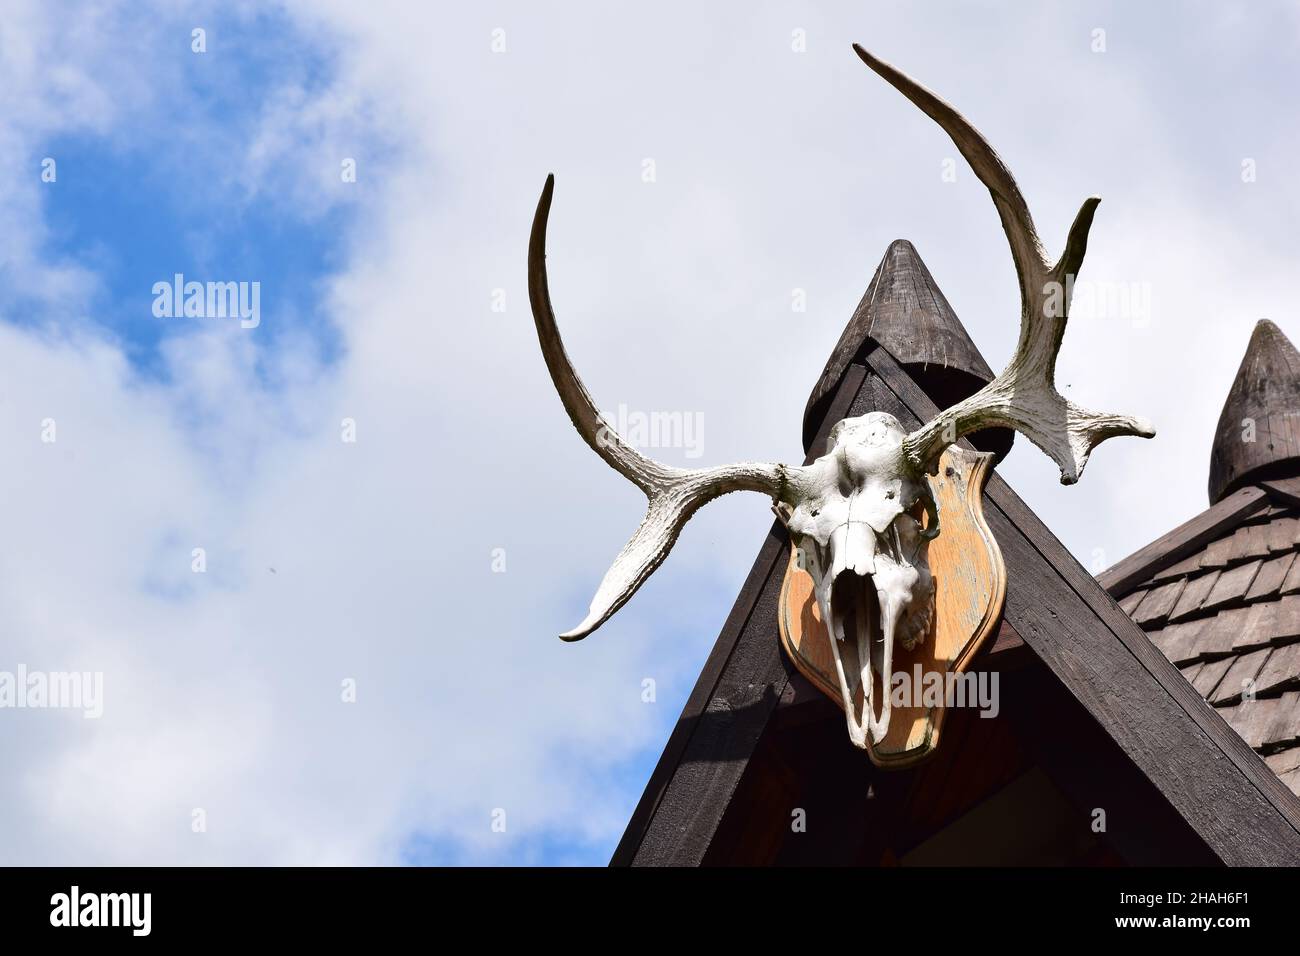 A destra, un cranio decorativo di cervo con grandi corna si appende sul tetto in legno della casa. A sinistra, contro il cielo blu, c'è una s vuota Foto Stock